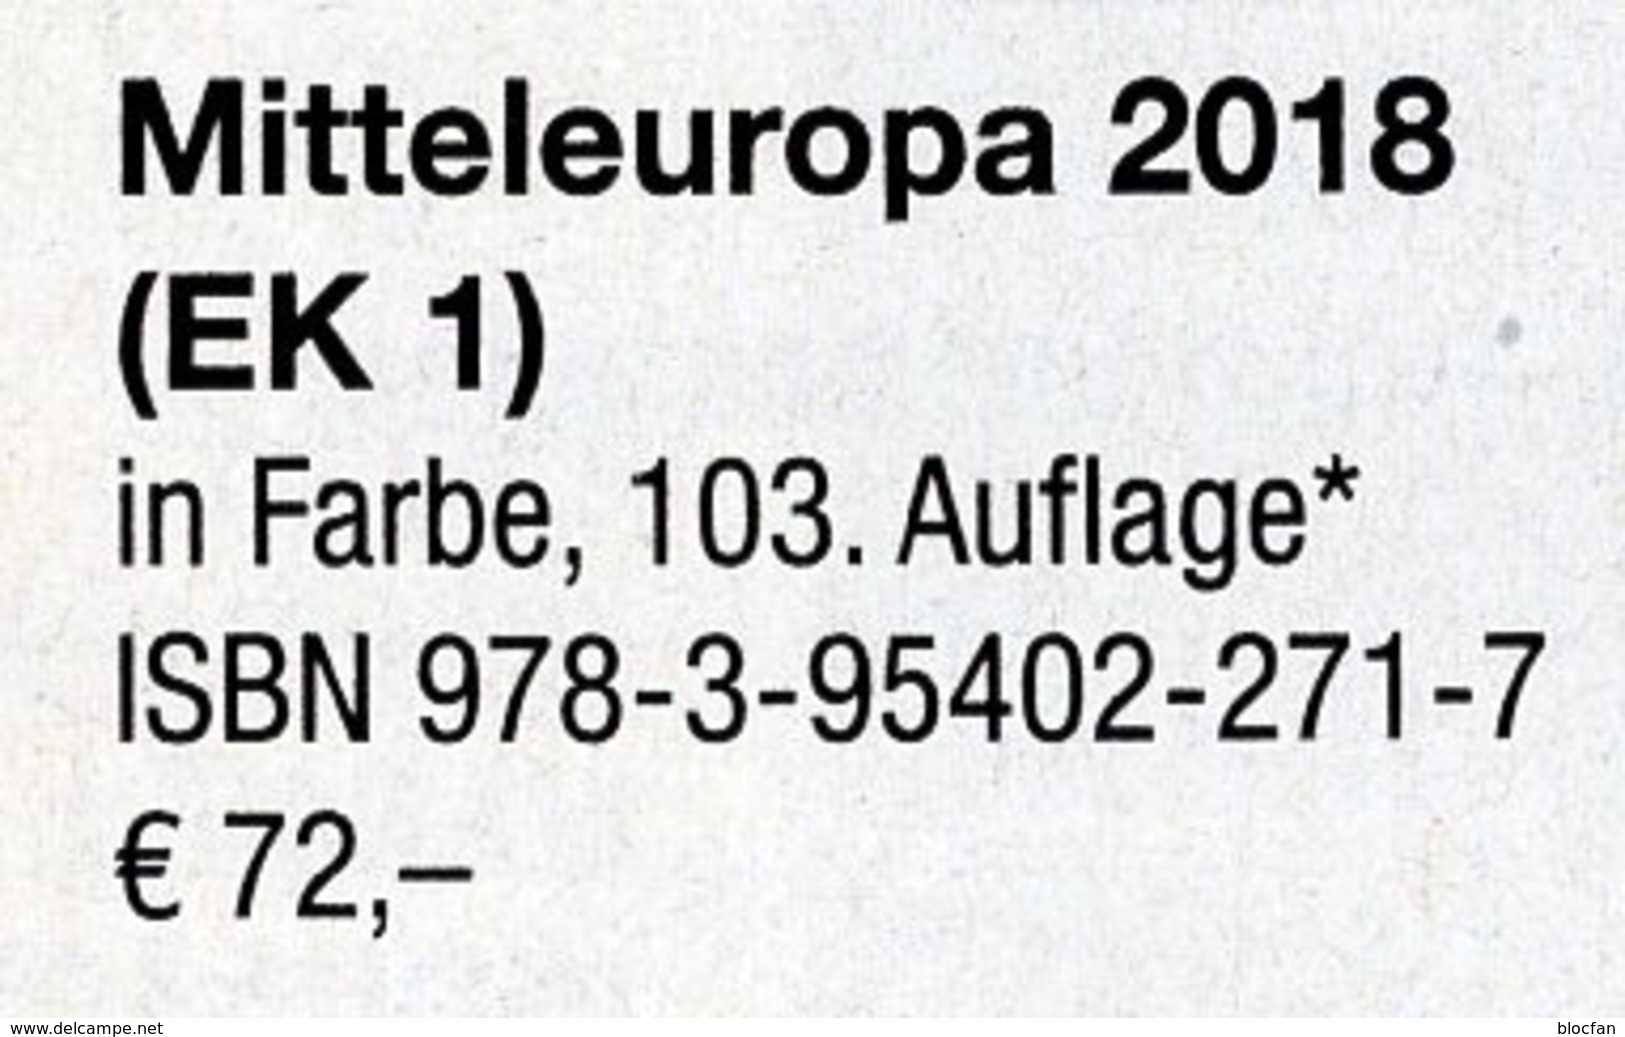 Mittel-Europa 2018 Katalog Band 1 MICHEL New 72€ Europe With Austria Schweiz UN Genf Wien CZ CSR Ungarn FL Slowakei - Chroniken & Jahrbücher